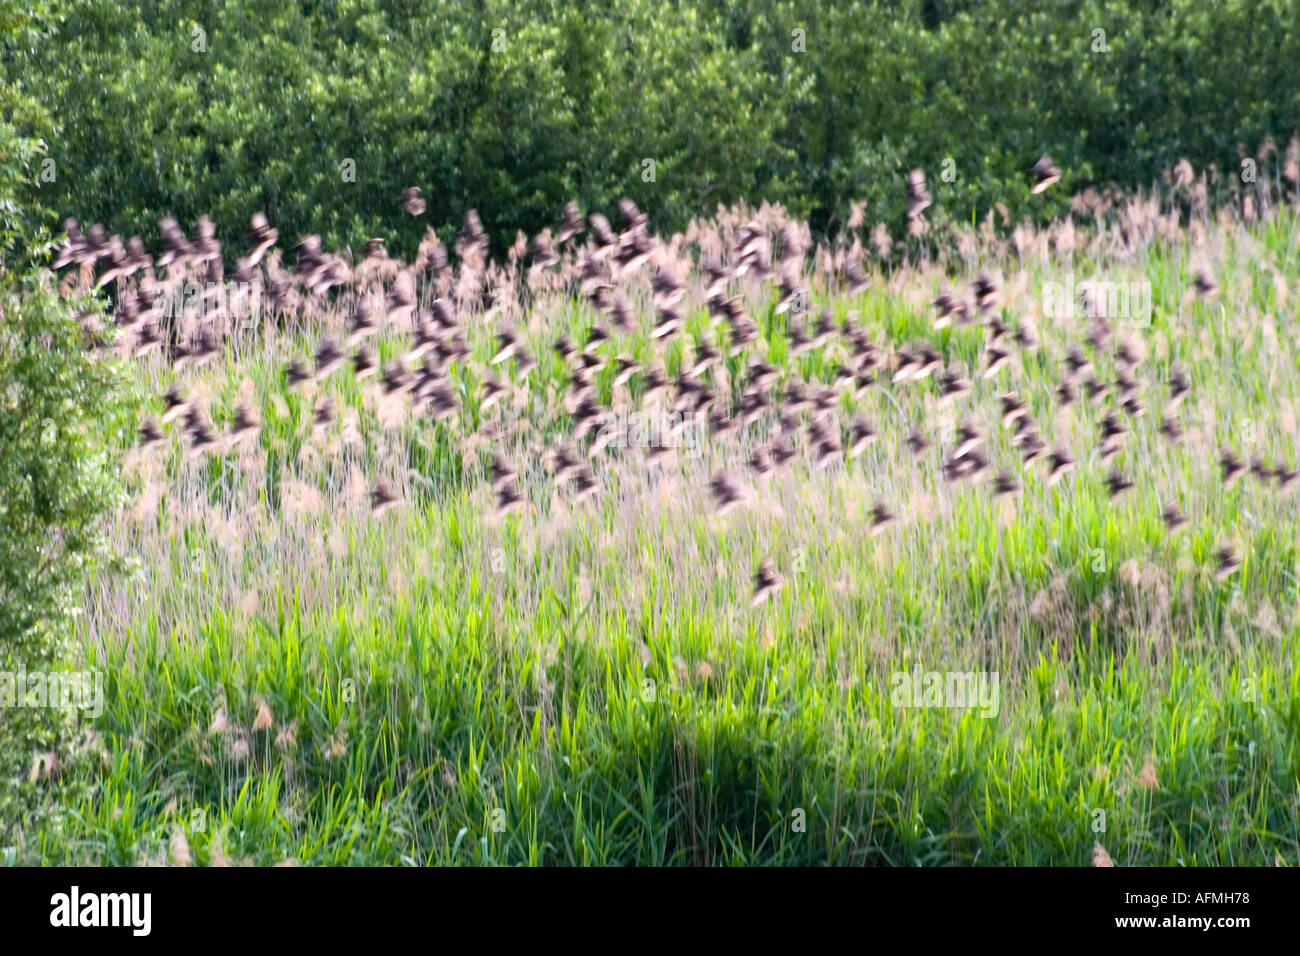 Starling Birds sturnus vulgaris flock of birds in flight Stock Photo